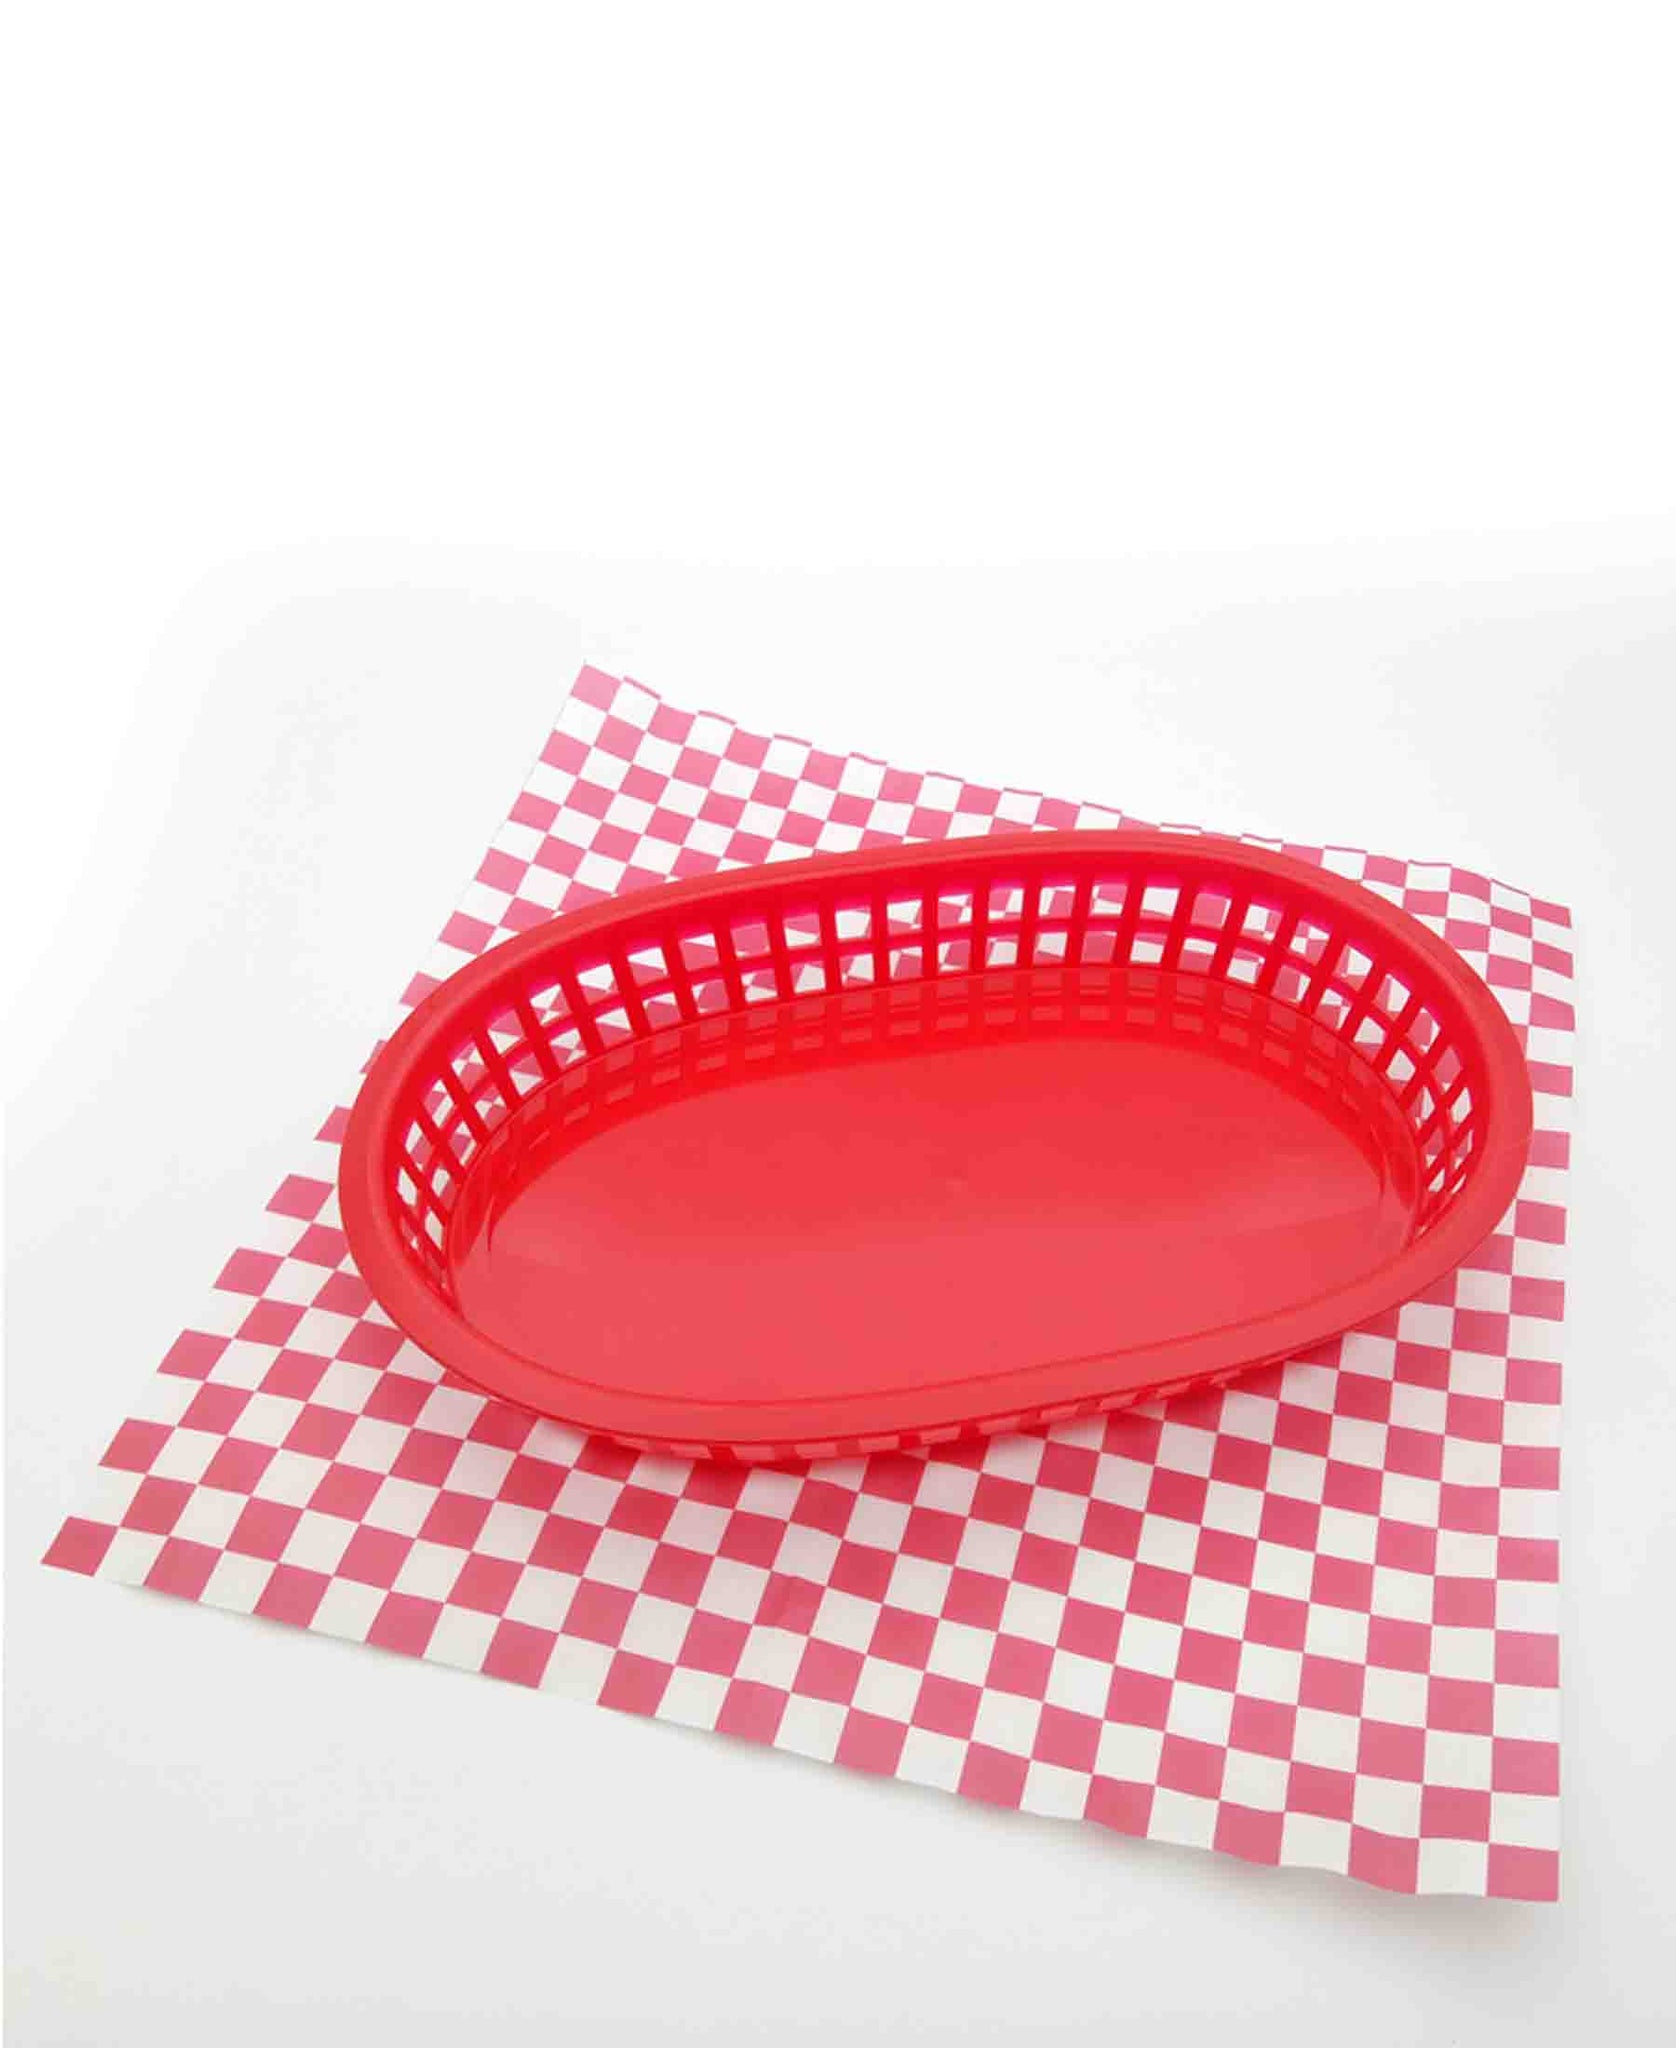 Regent 27cm Oval Plastic Serving Basket - Red